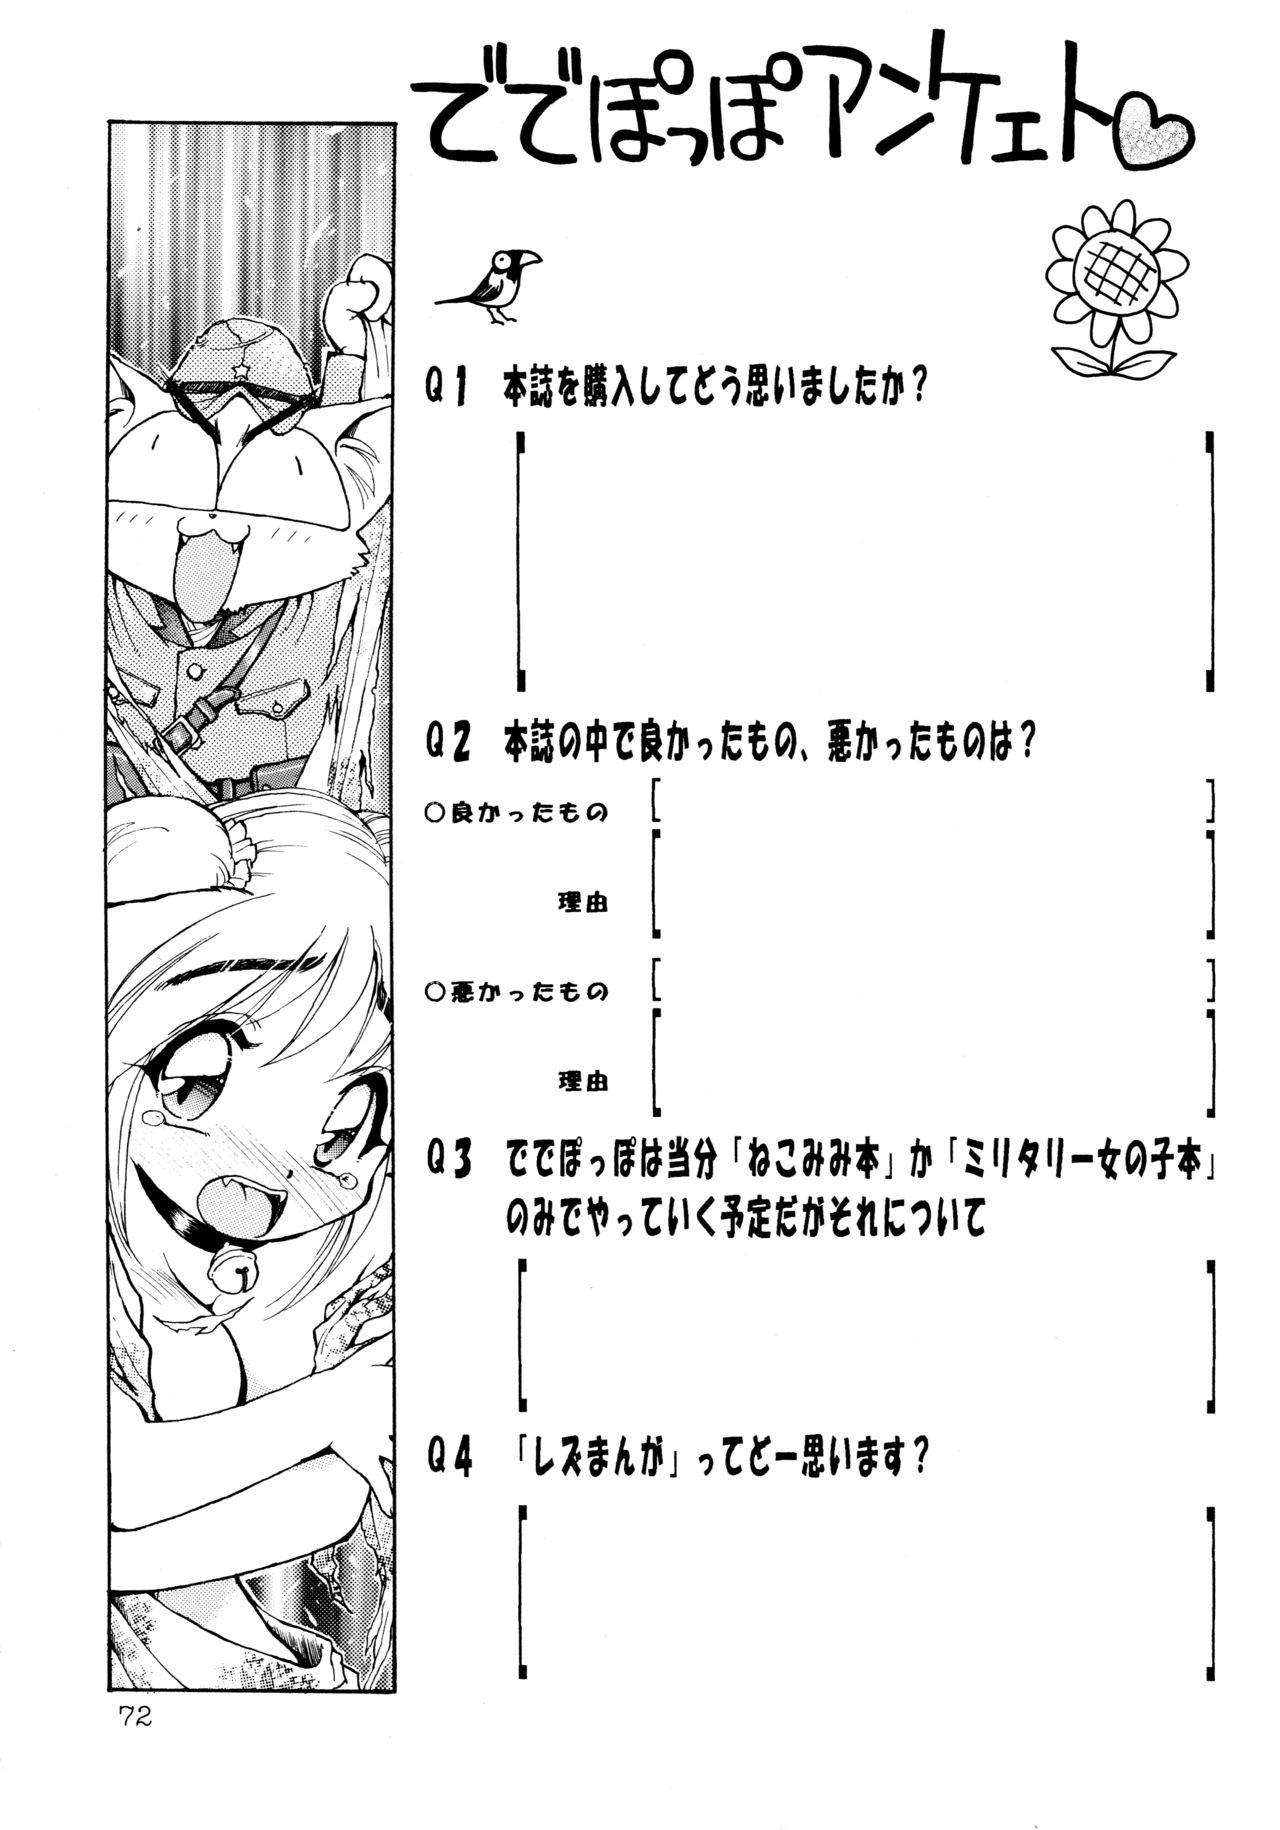 Rubbing Uwasa no Neko Shuukai Spy Cam - Page 72